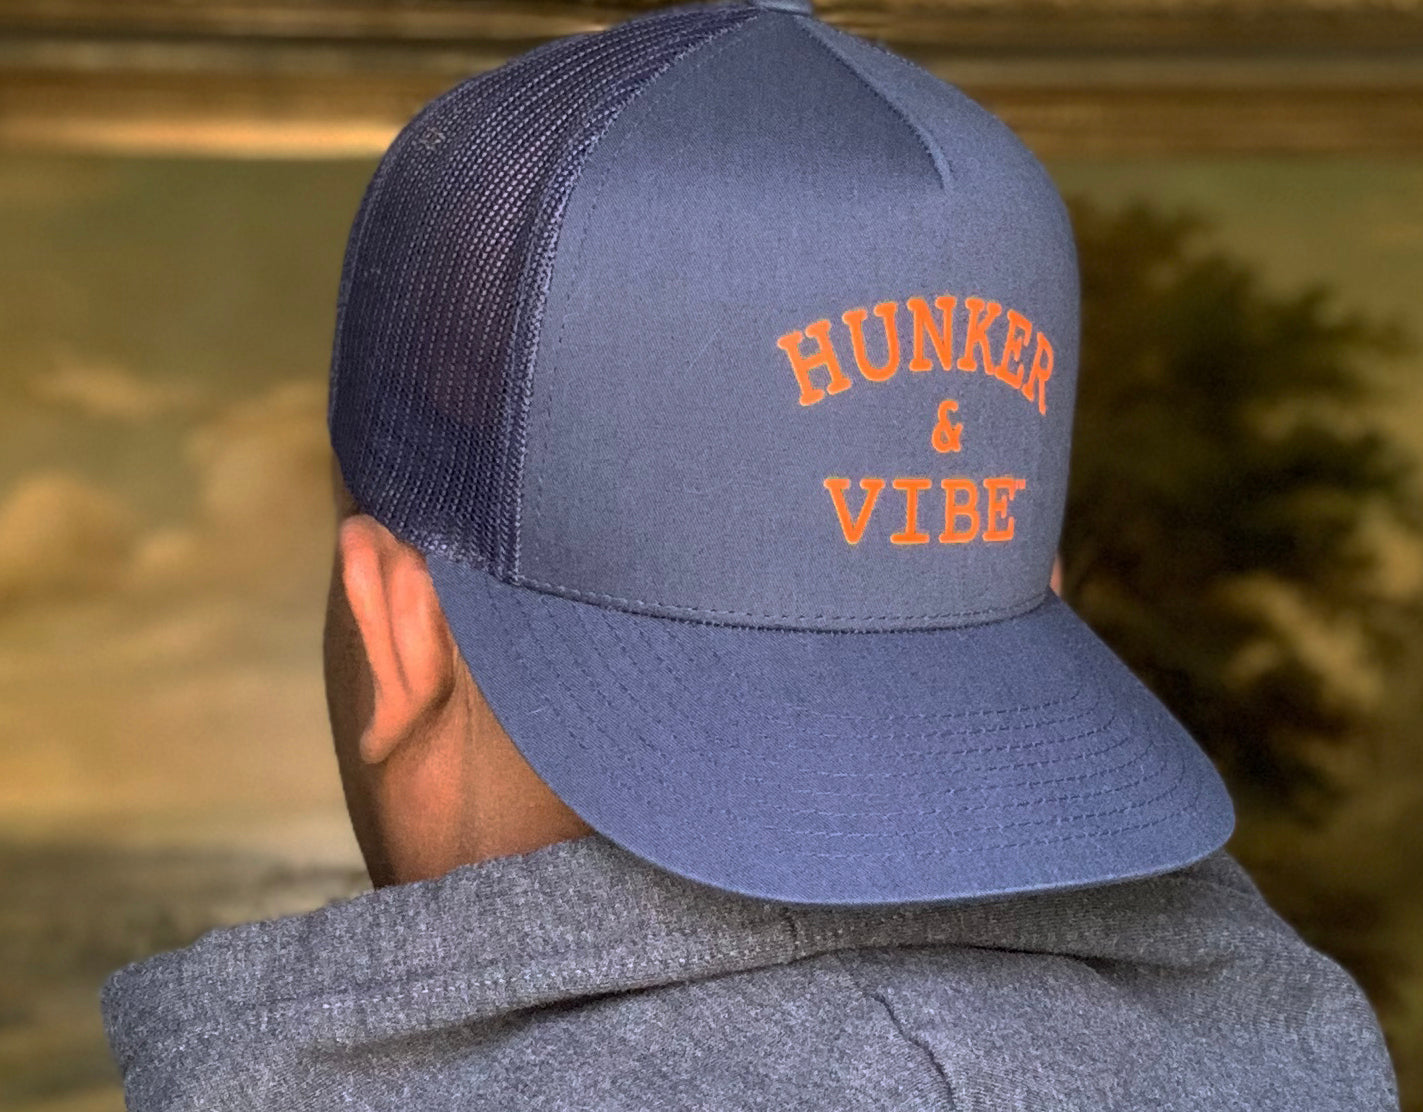 The Hunker & Vibe Trucker Hat